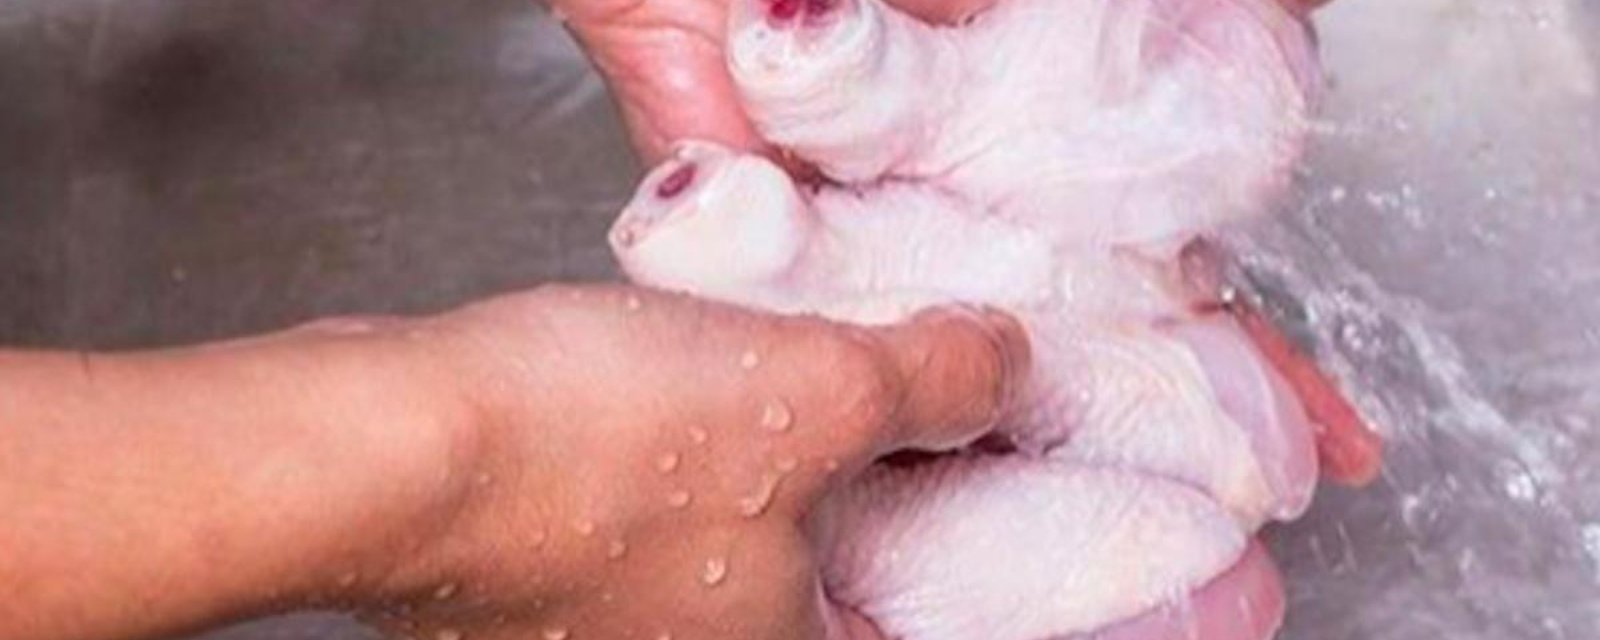 Découvrez pourquoi vous ne devriez jamais laver le poulet avant de le cuisiner